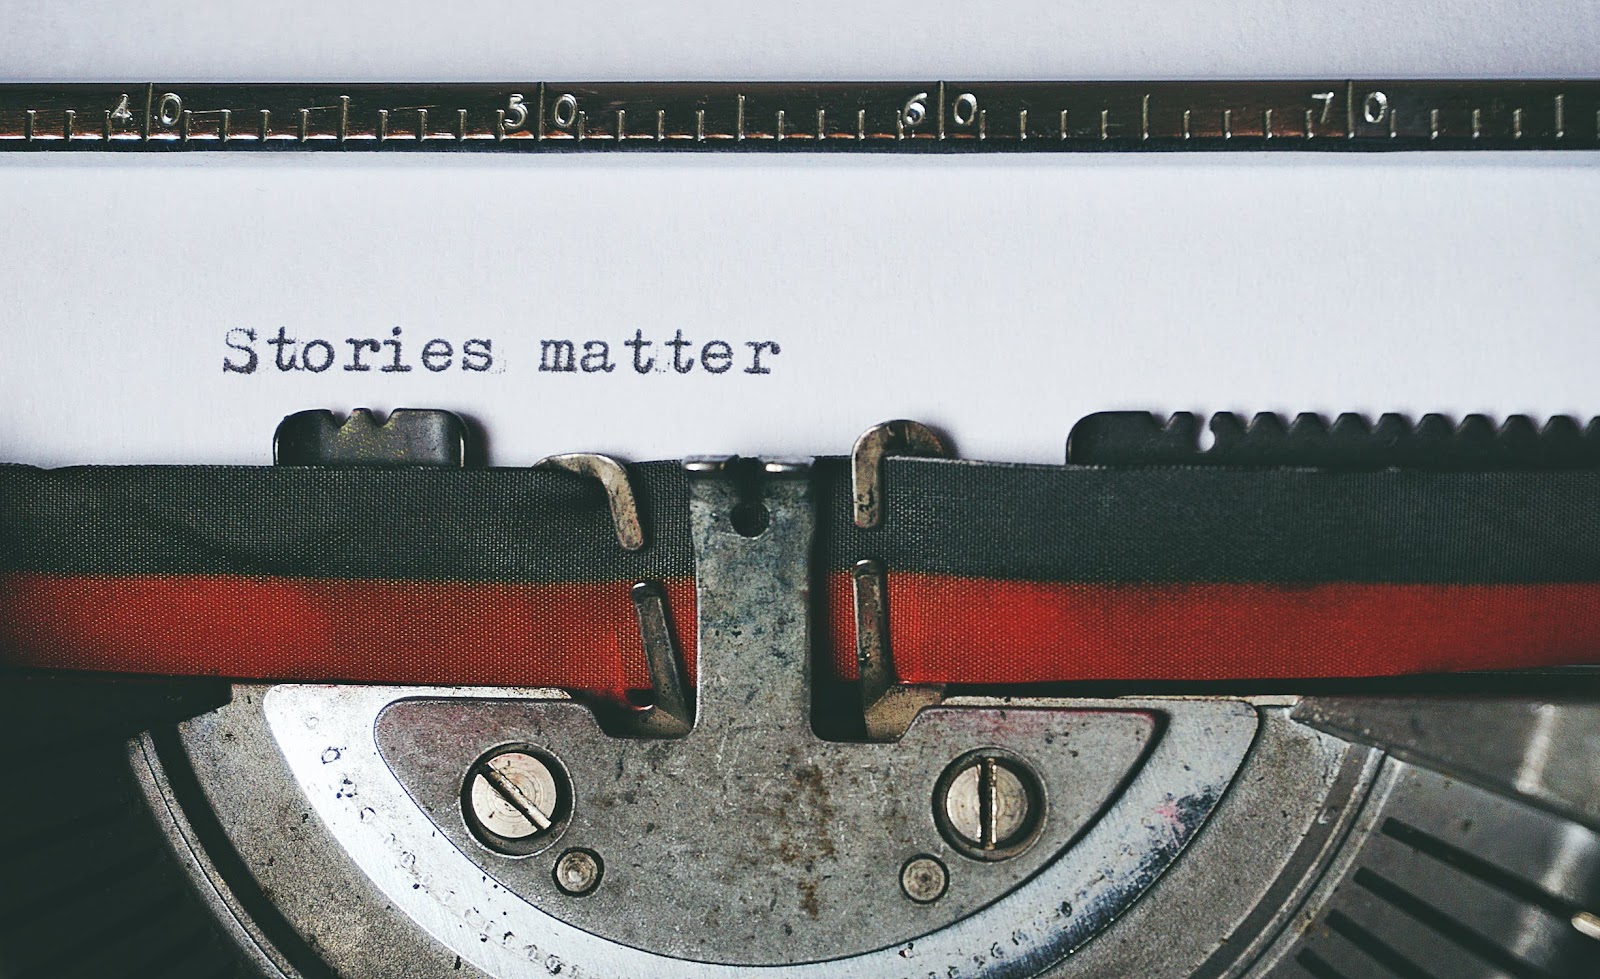 Stories matter - typed on a typewriter 